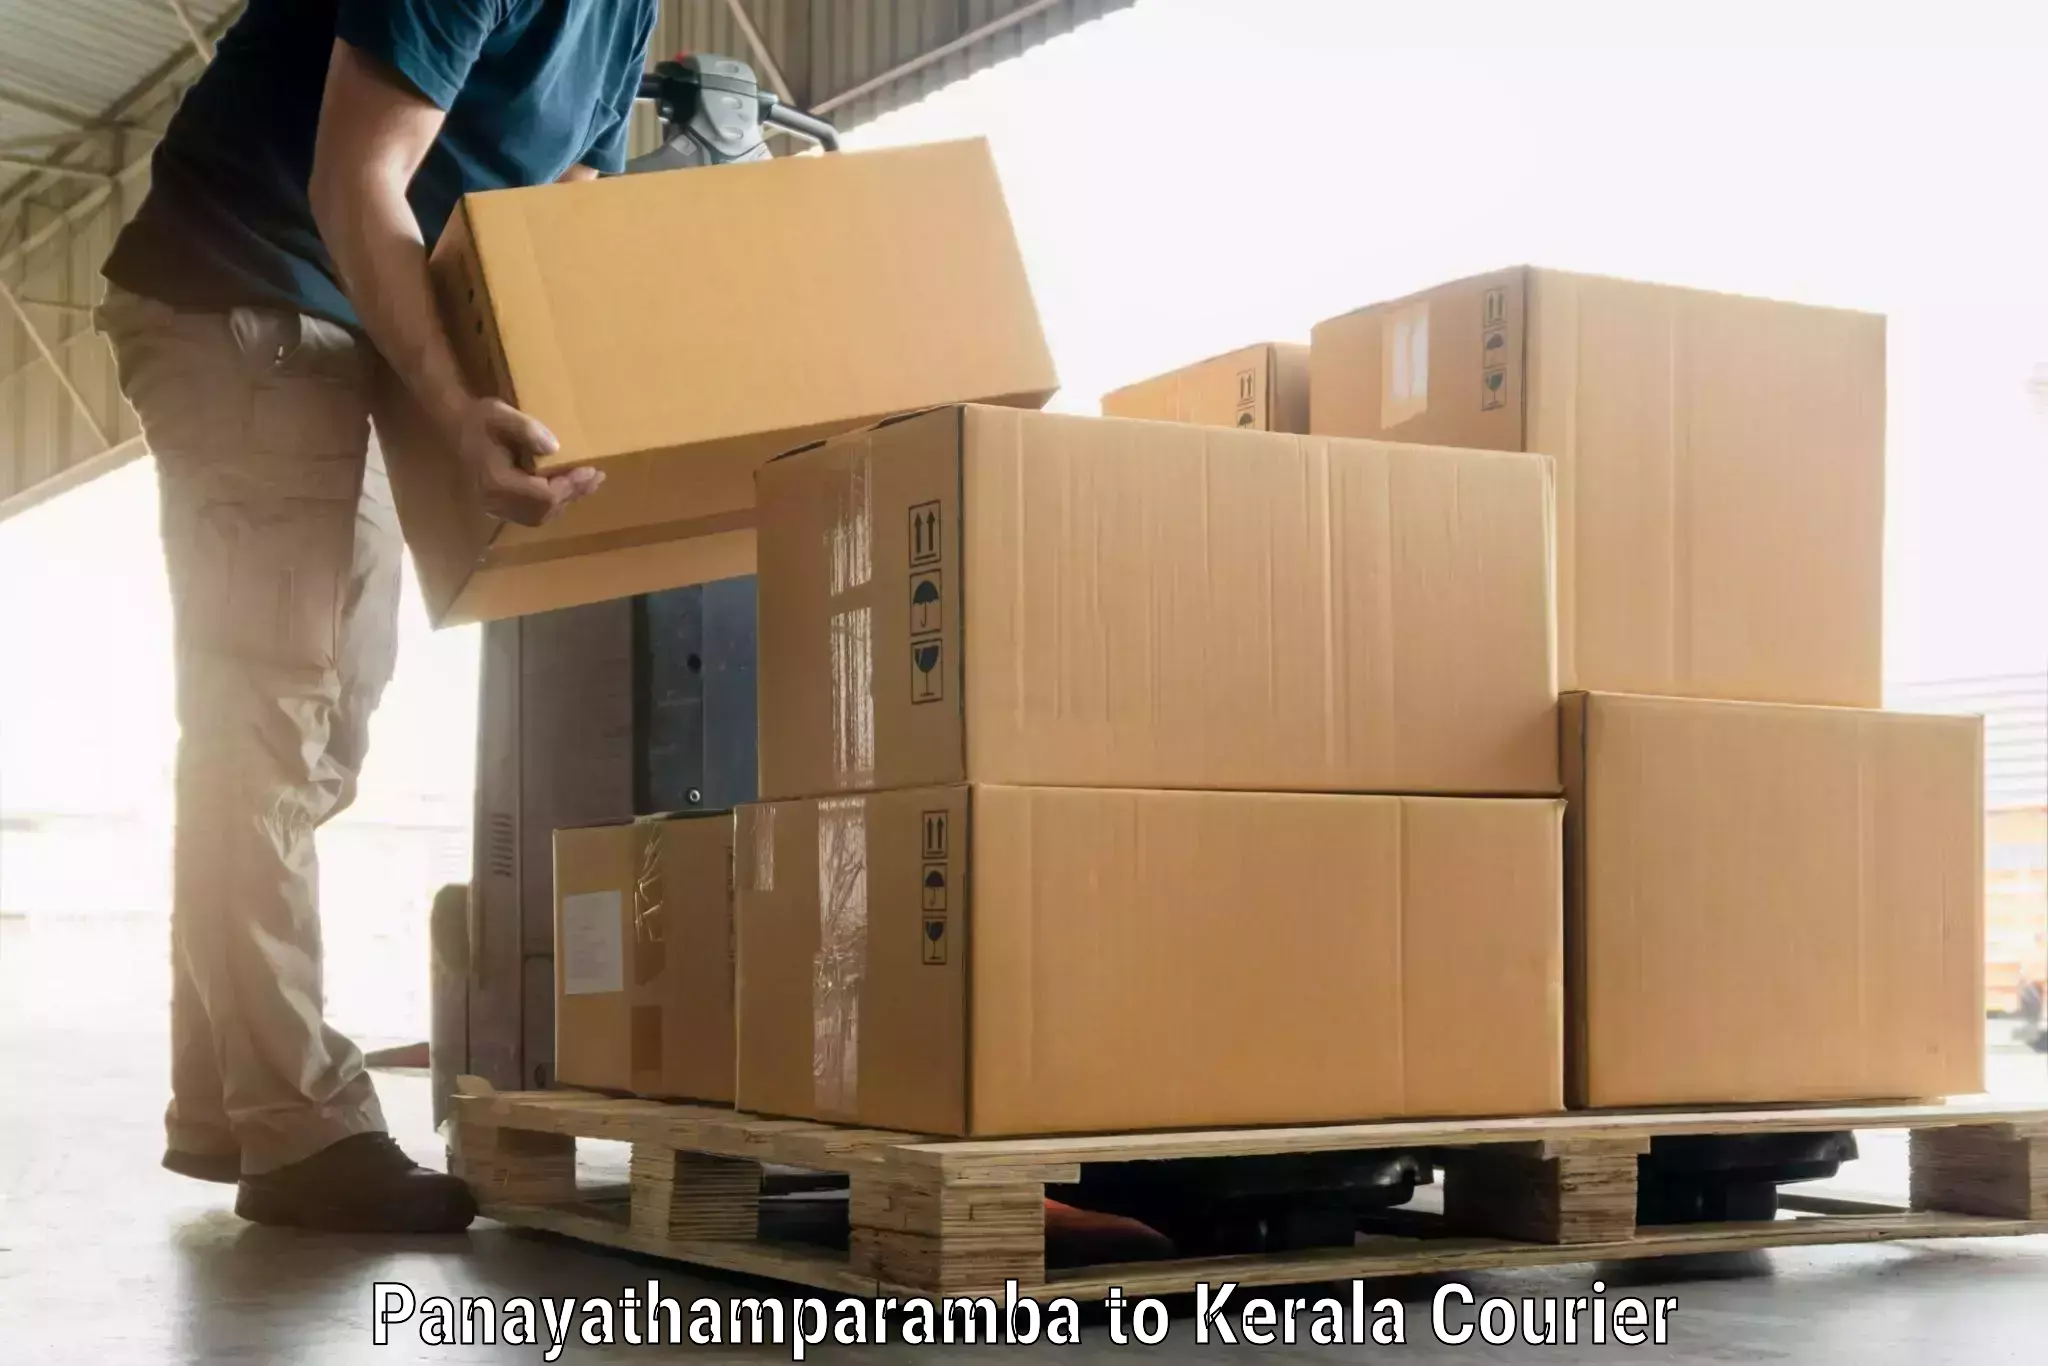 Luggage transport service Panayathamparamba to Manthuka